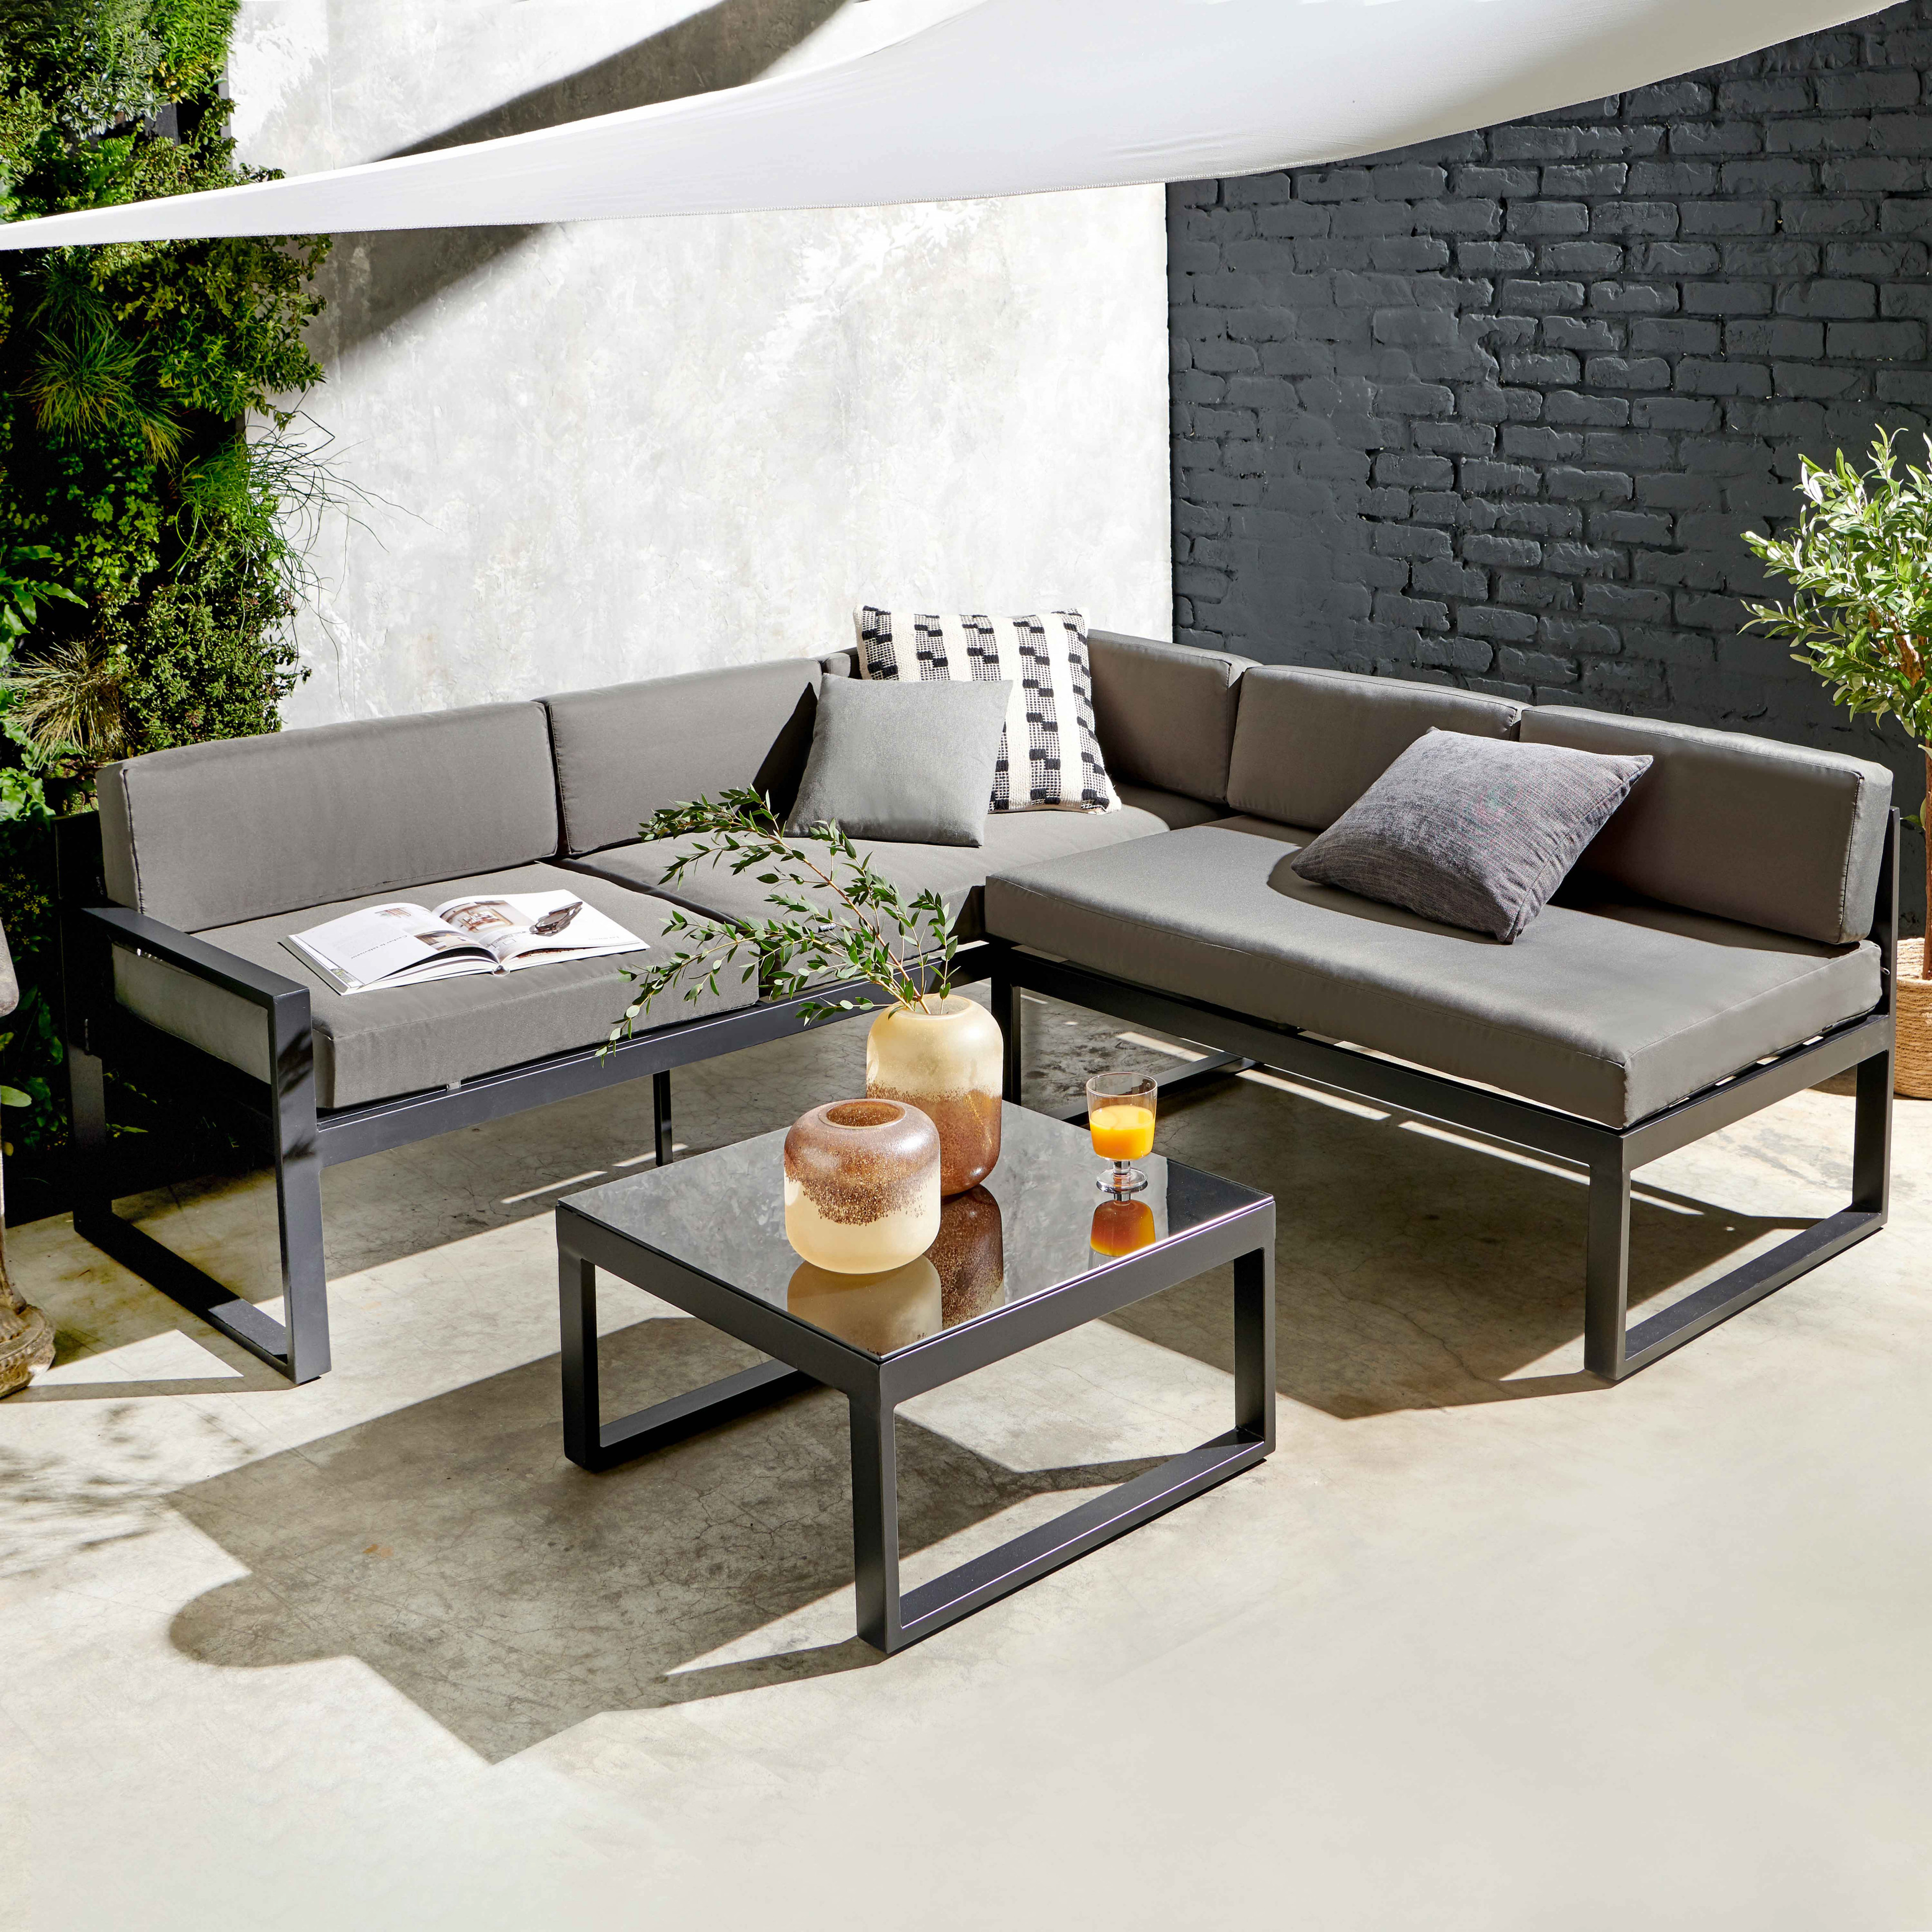 Conjunto de jardín 5 plazas: sofá reclinable y mesa de centro | Oviala